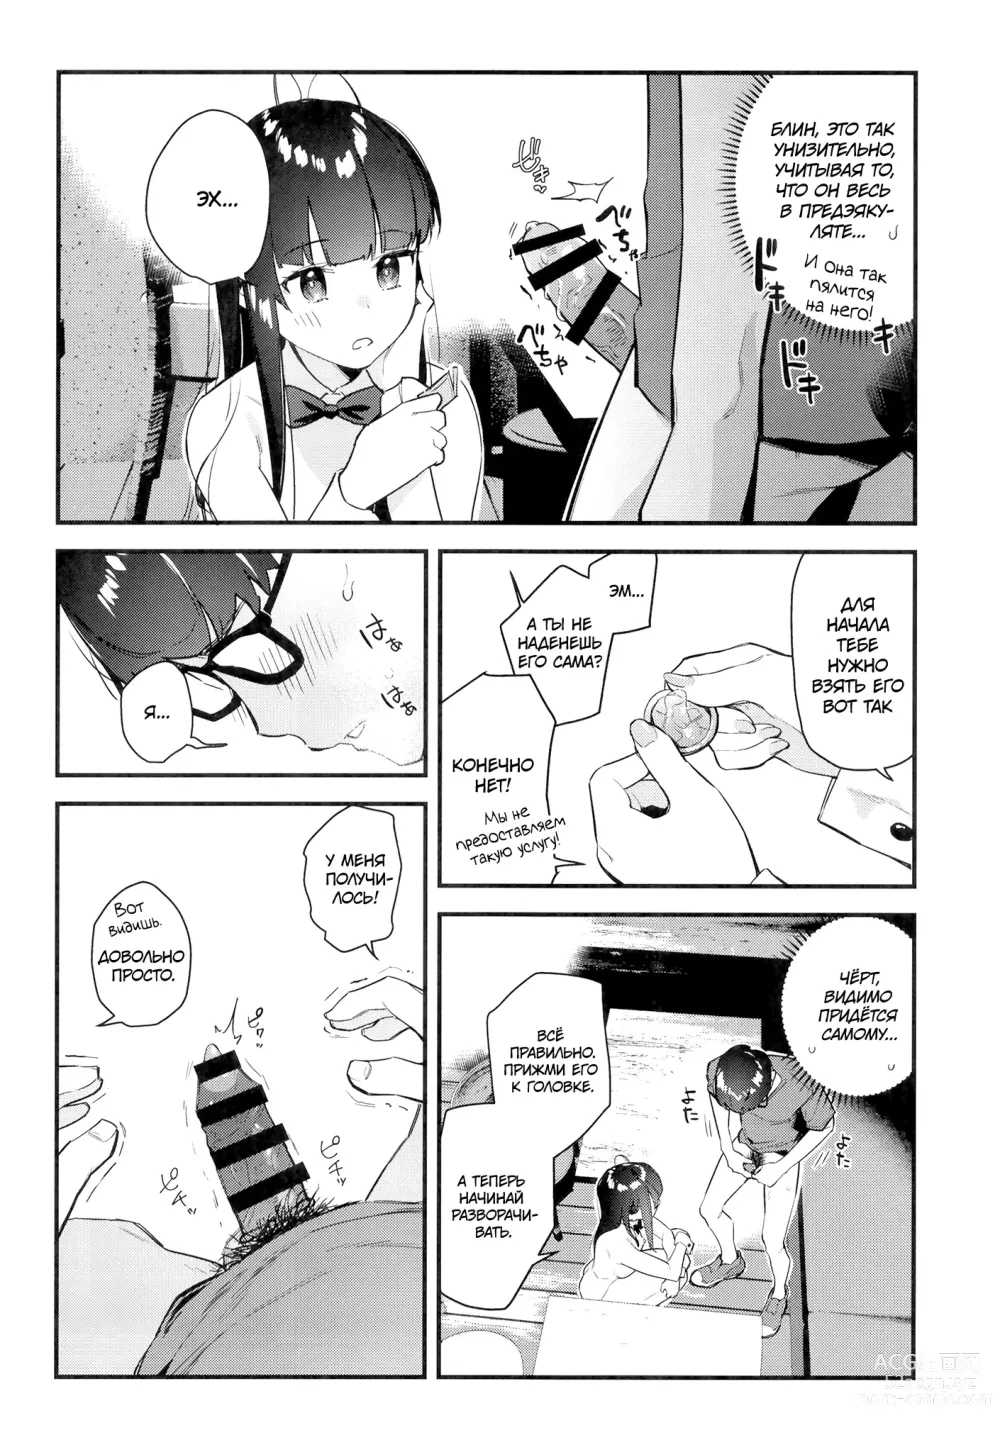 Page 25 of doujinshi Девушка, которая мне нравится, оказывает особые услуги постоянным клиентам